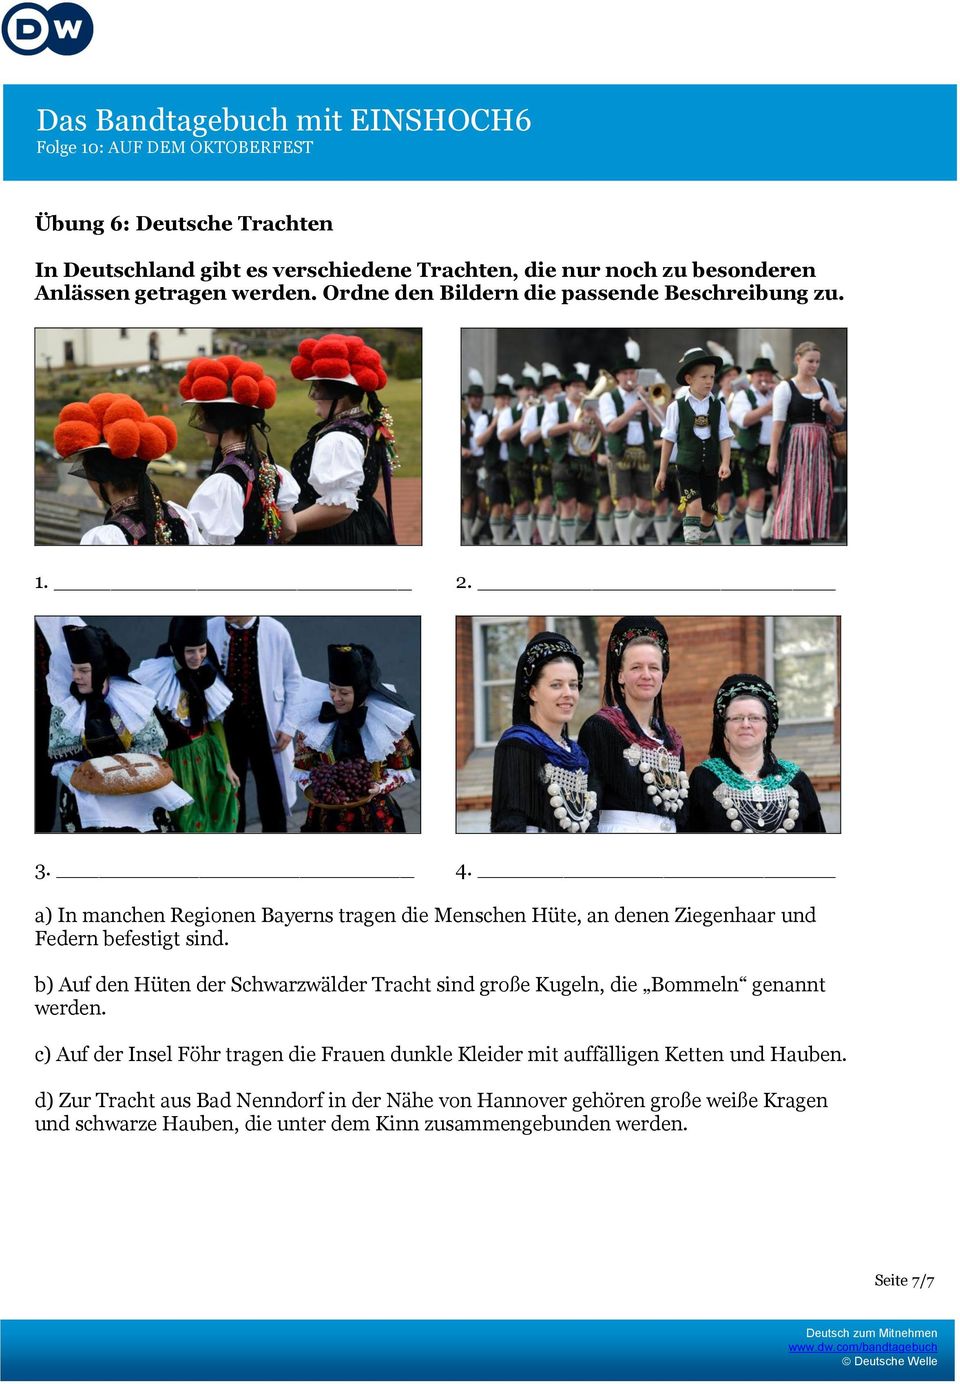 a) In manchen Regionen Bayerns tragen die Menschen Hüte, an denen Ziegenhaar und Federn befestigt sind.